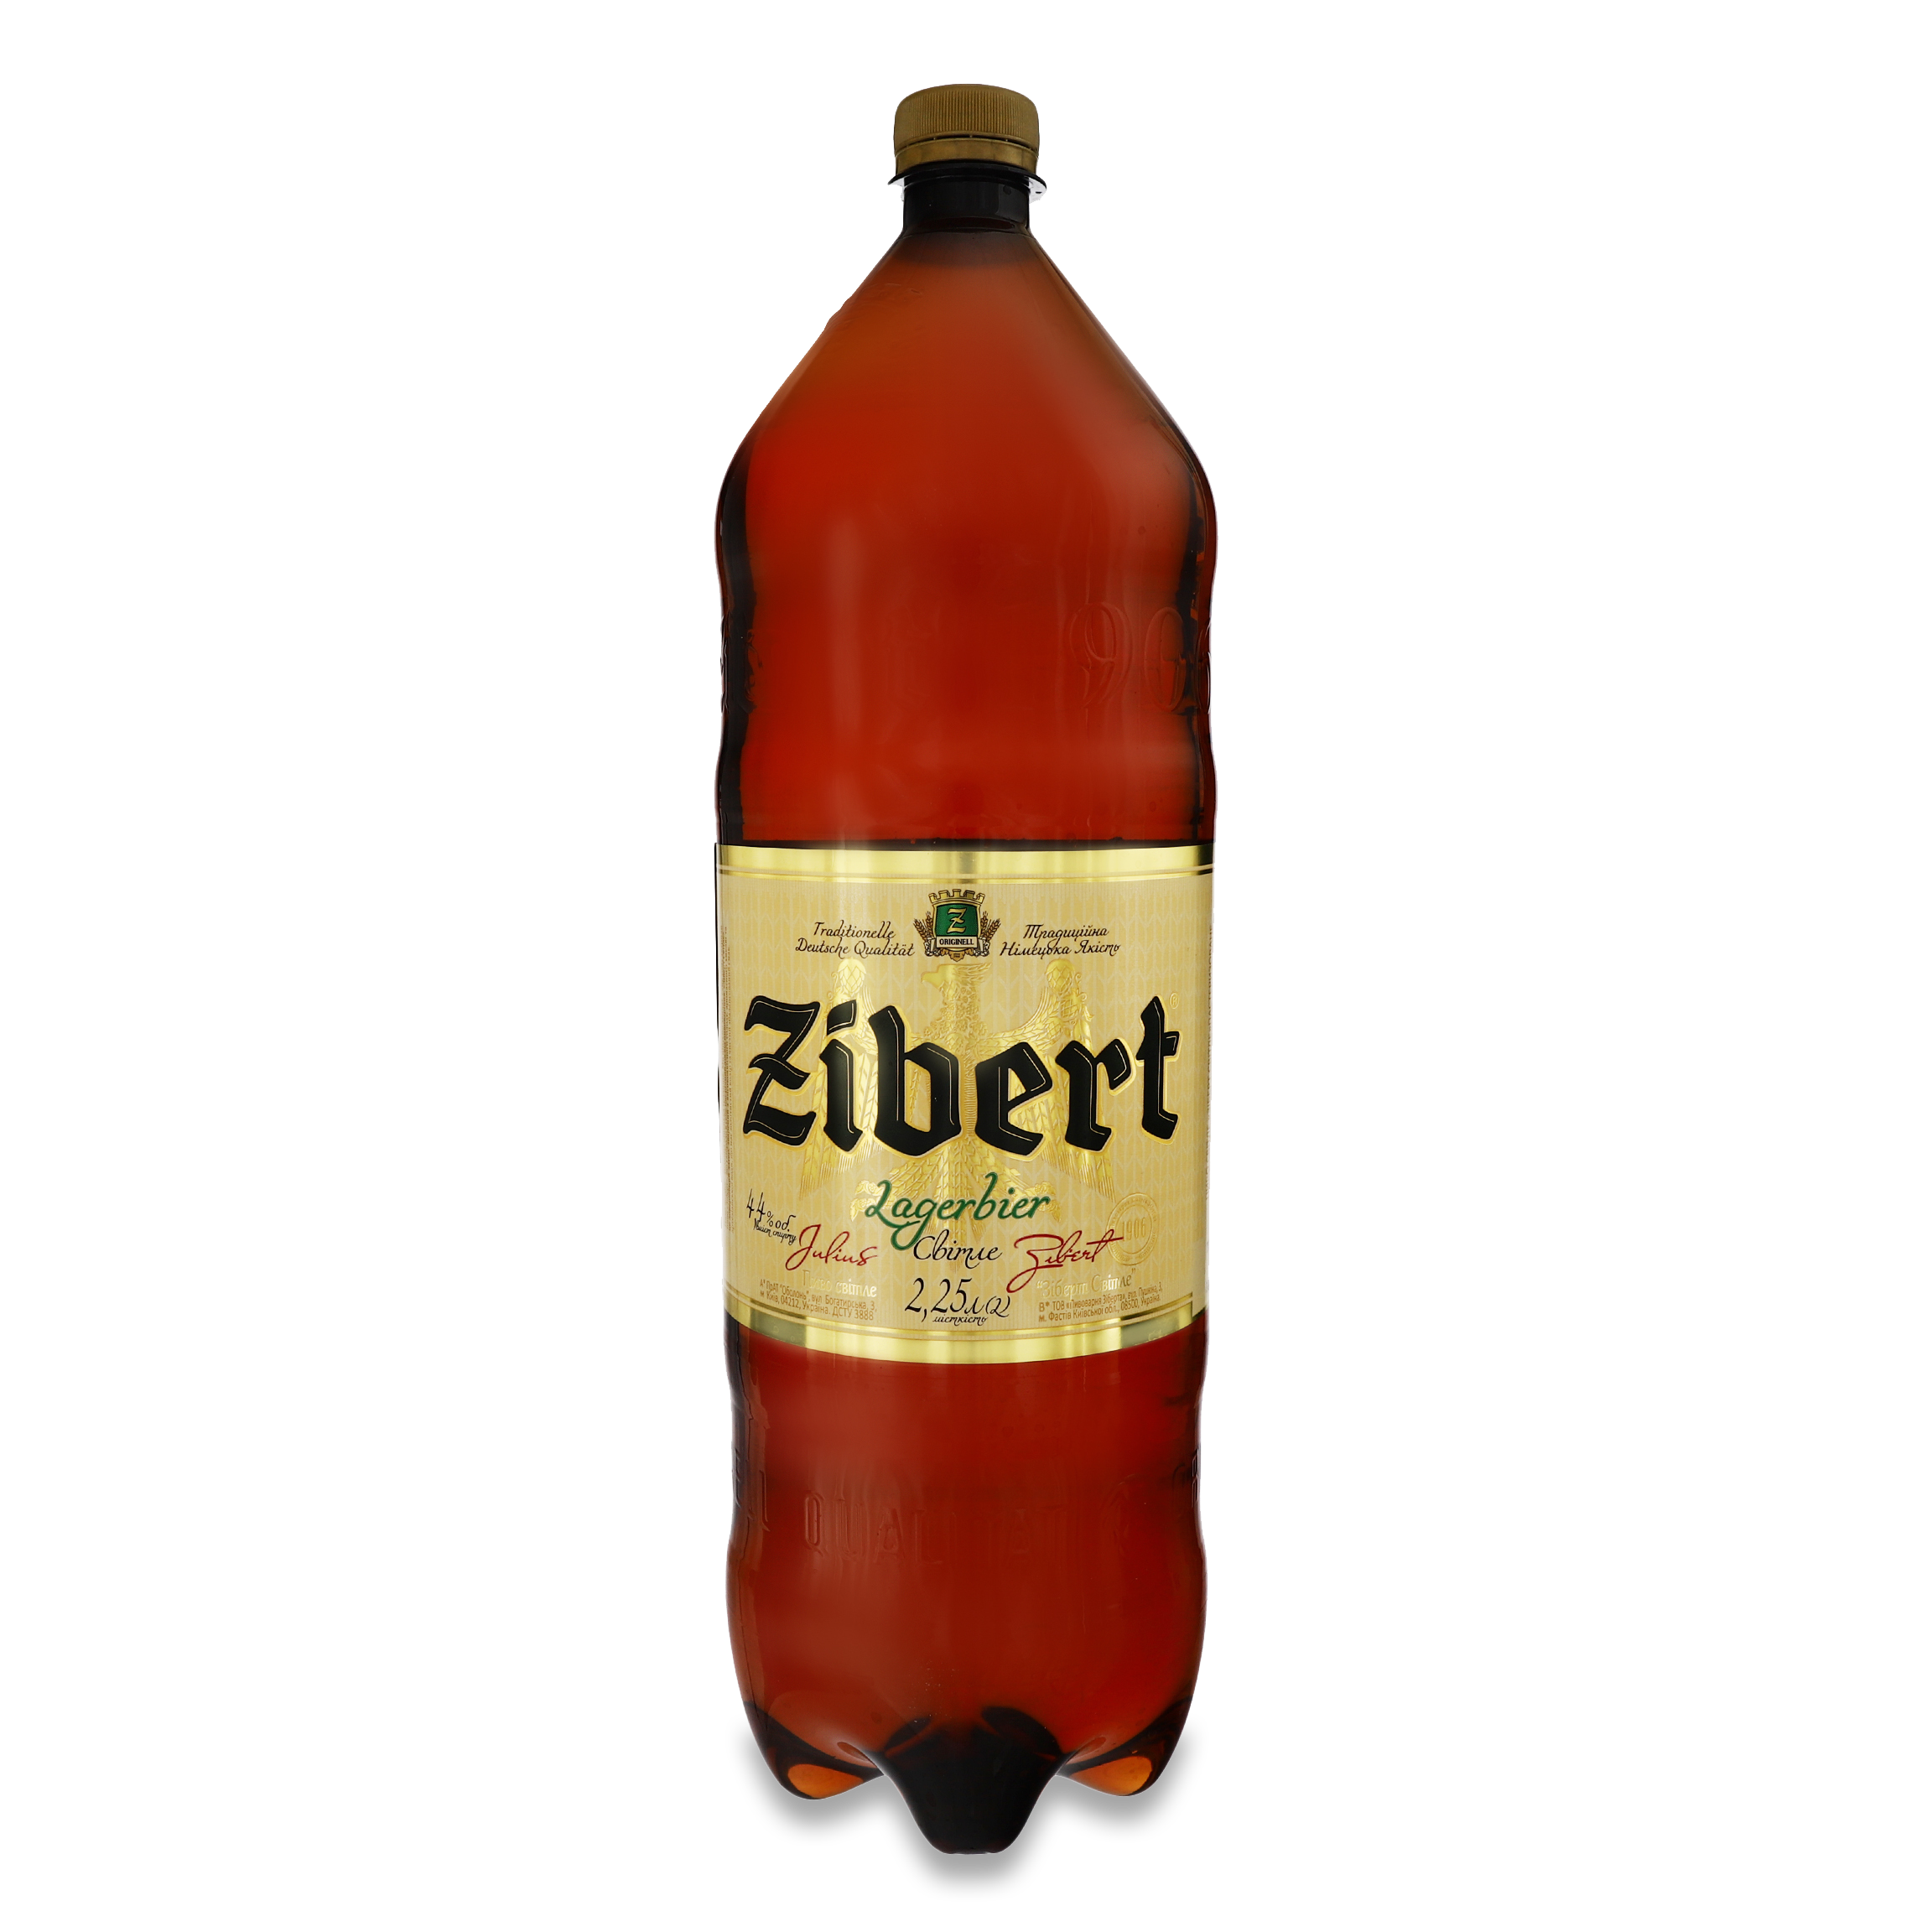 Пиво Zibert Светлое 4,4% 2,25л